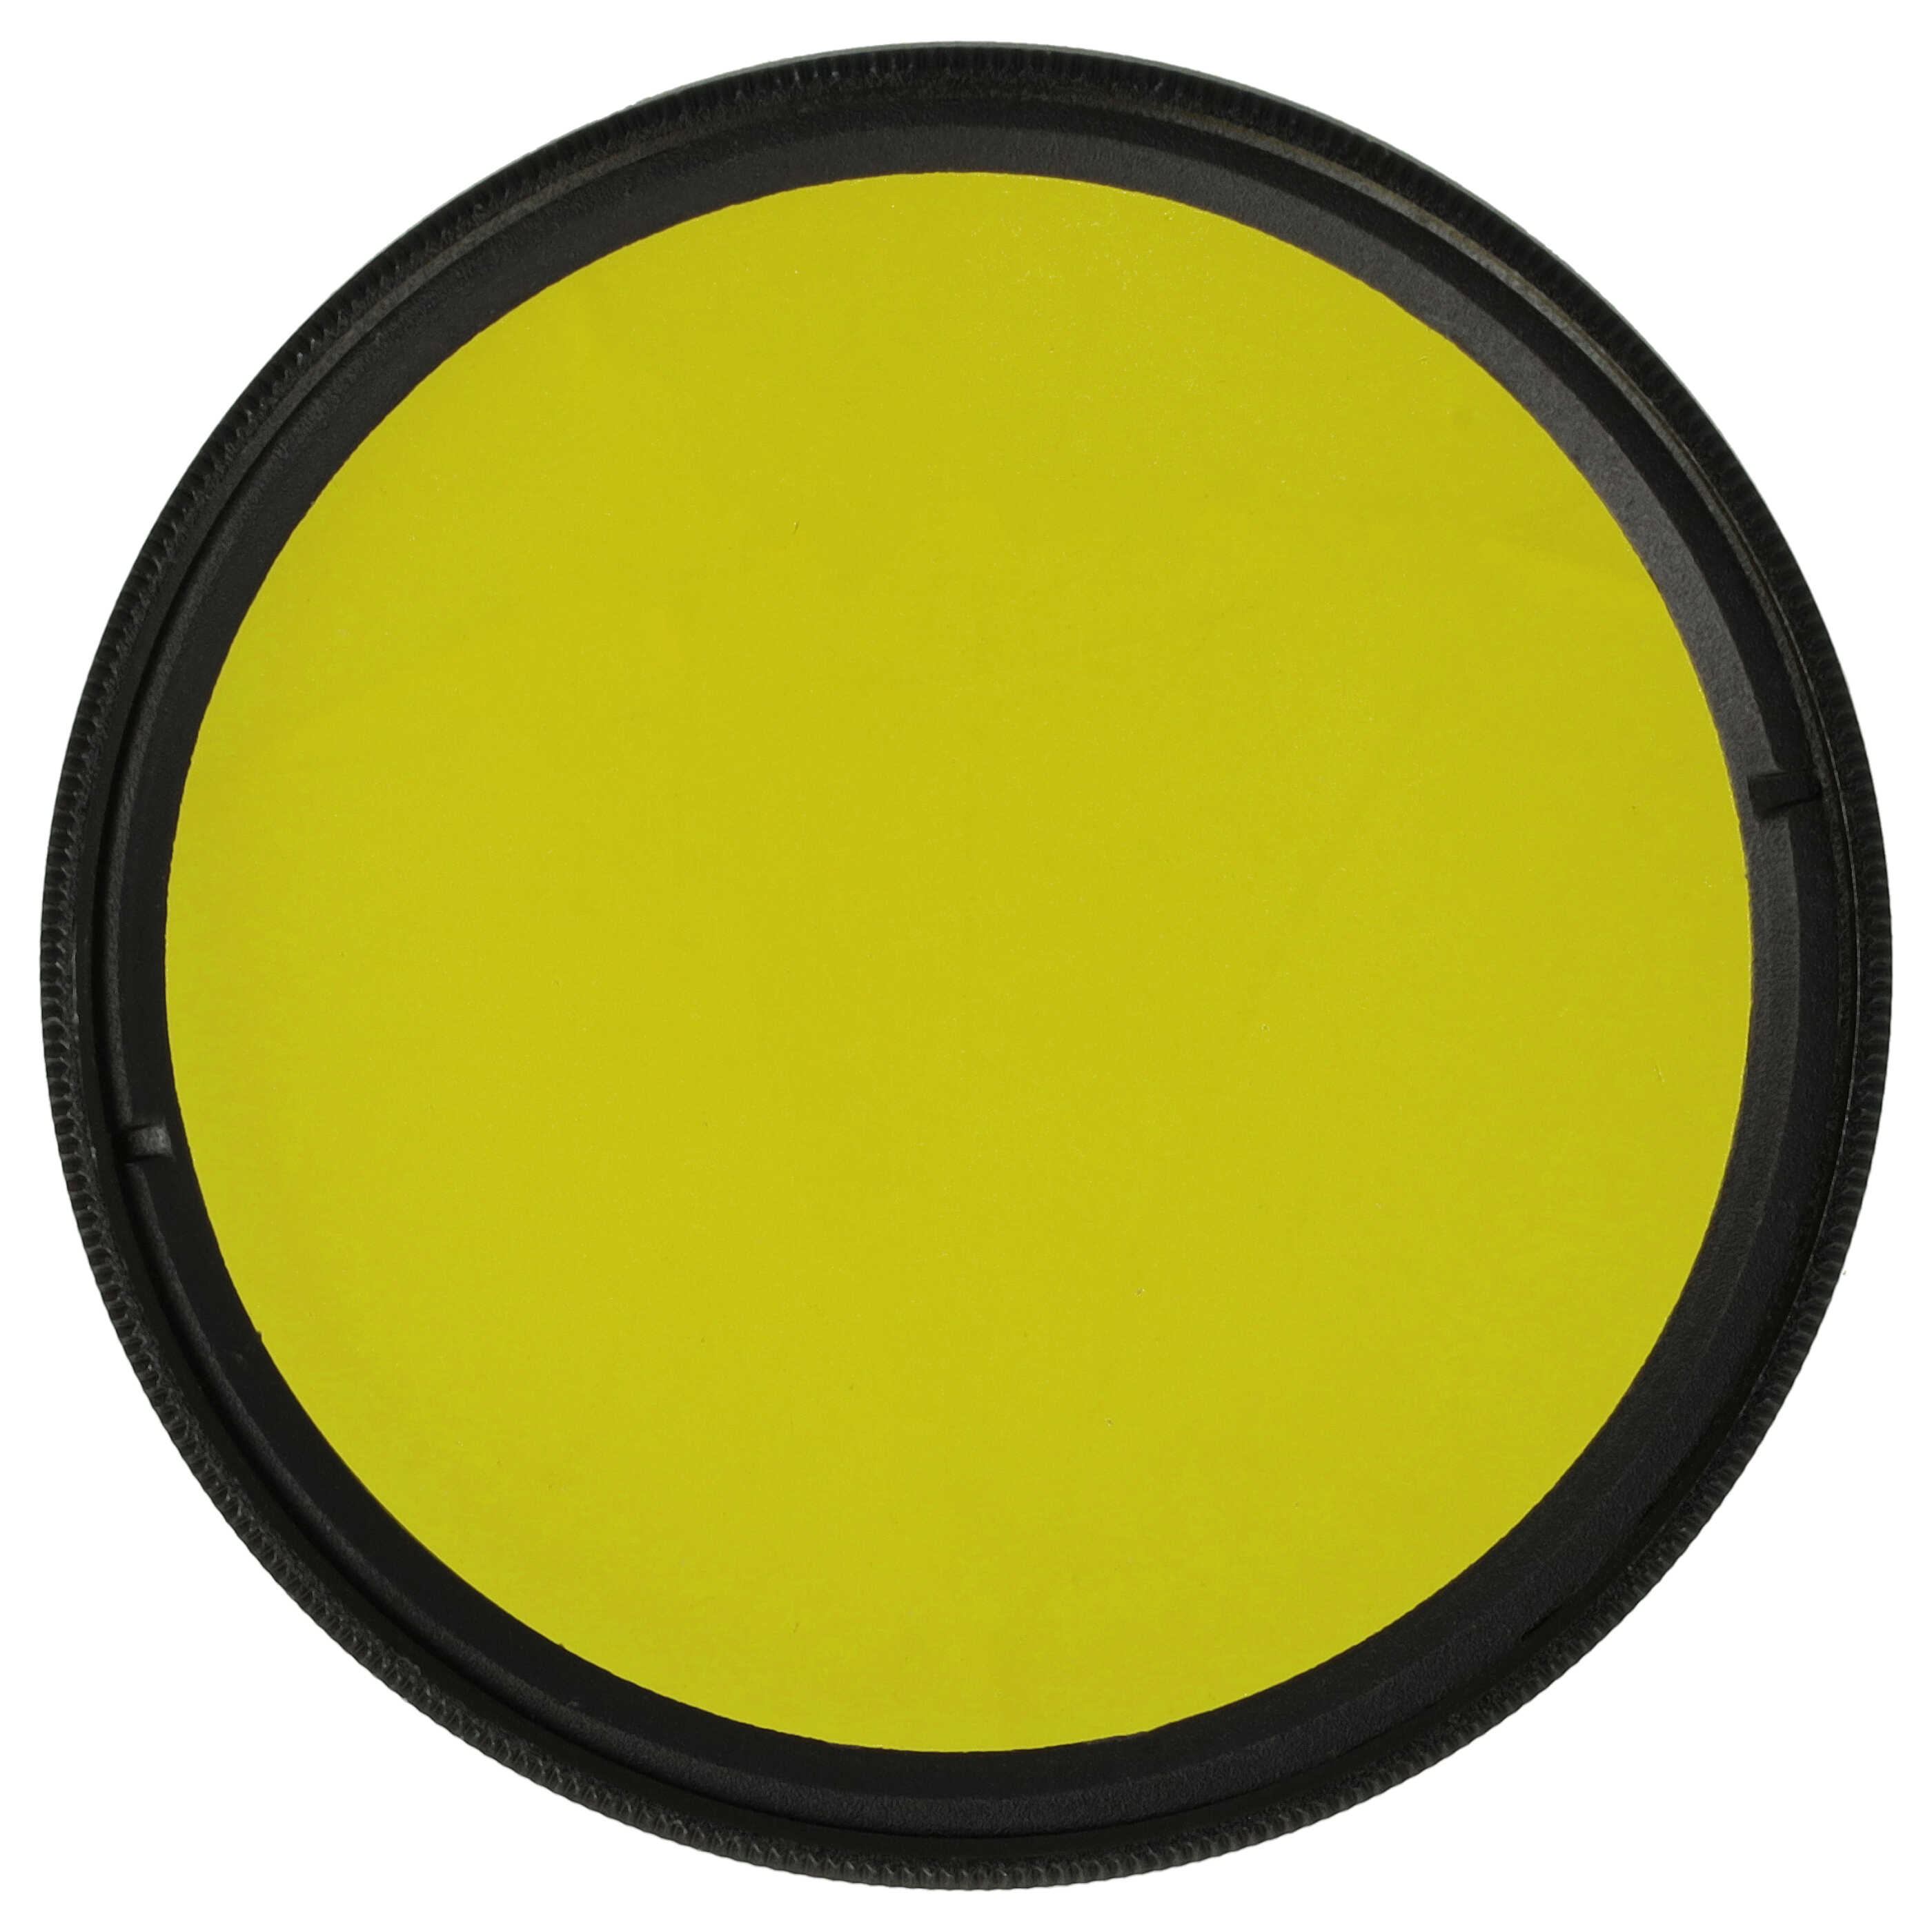 Filtre de couleur jaune pour objectifs d'appareils photo de 55 mm - Filtre jaune